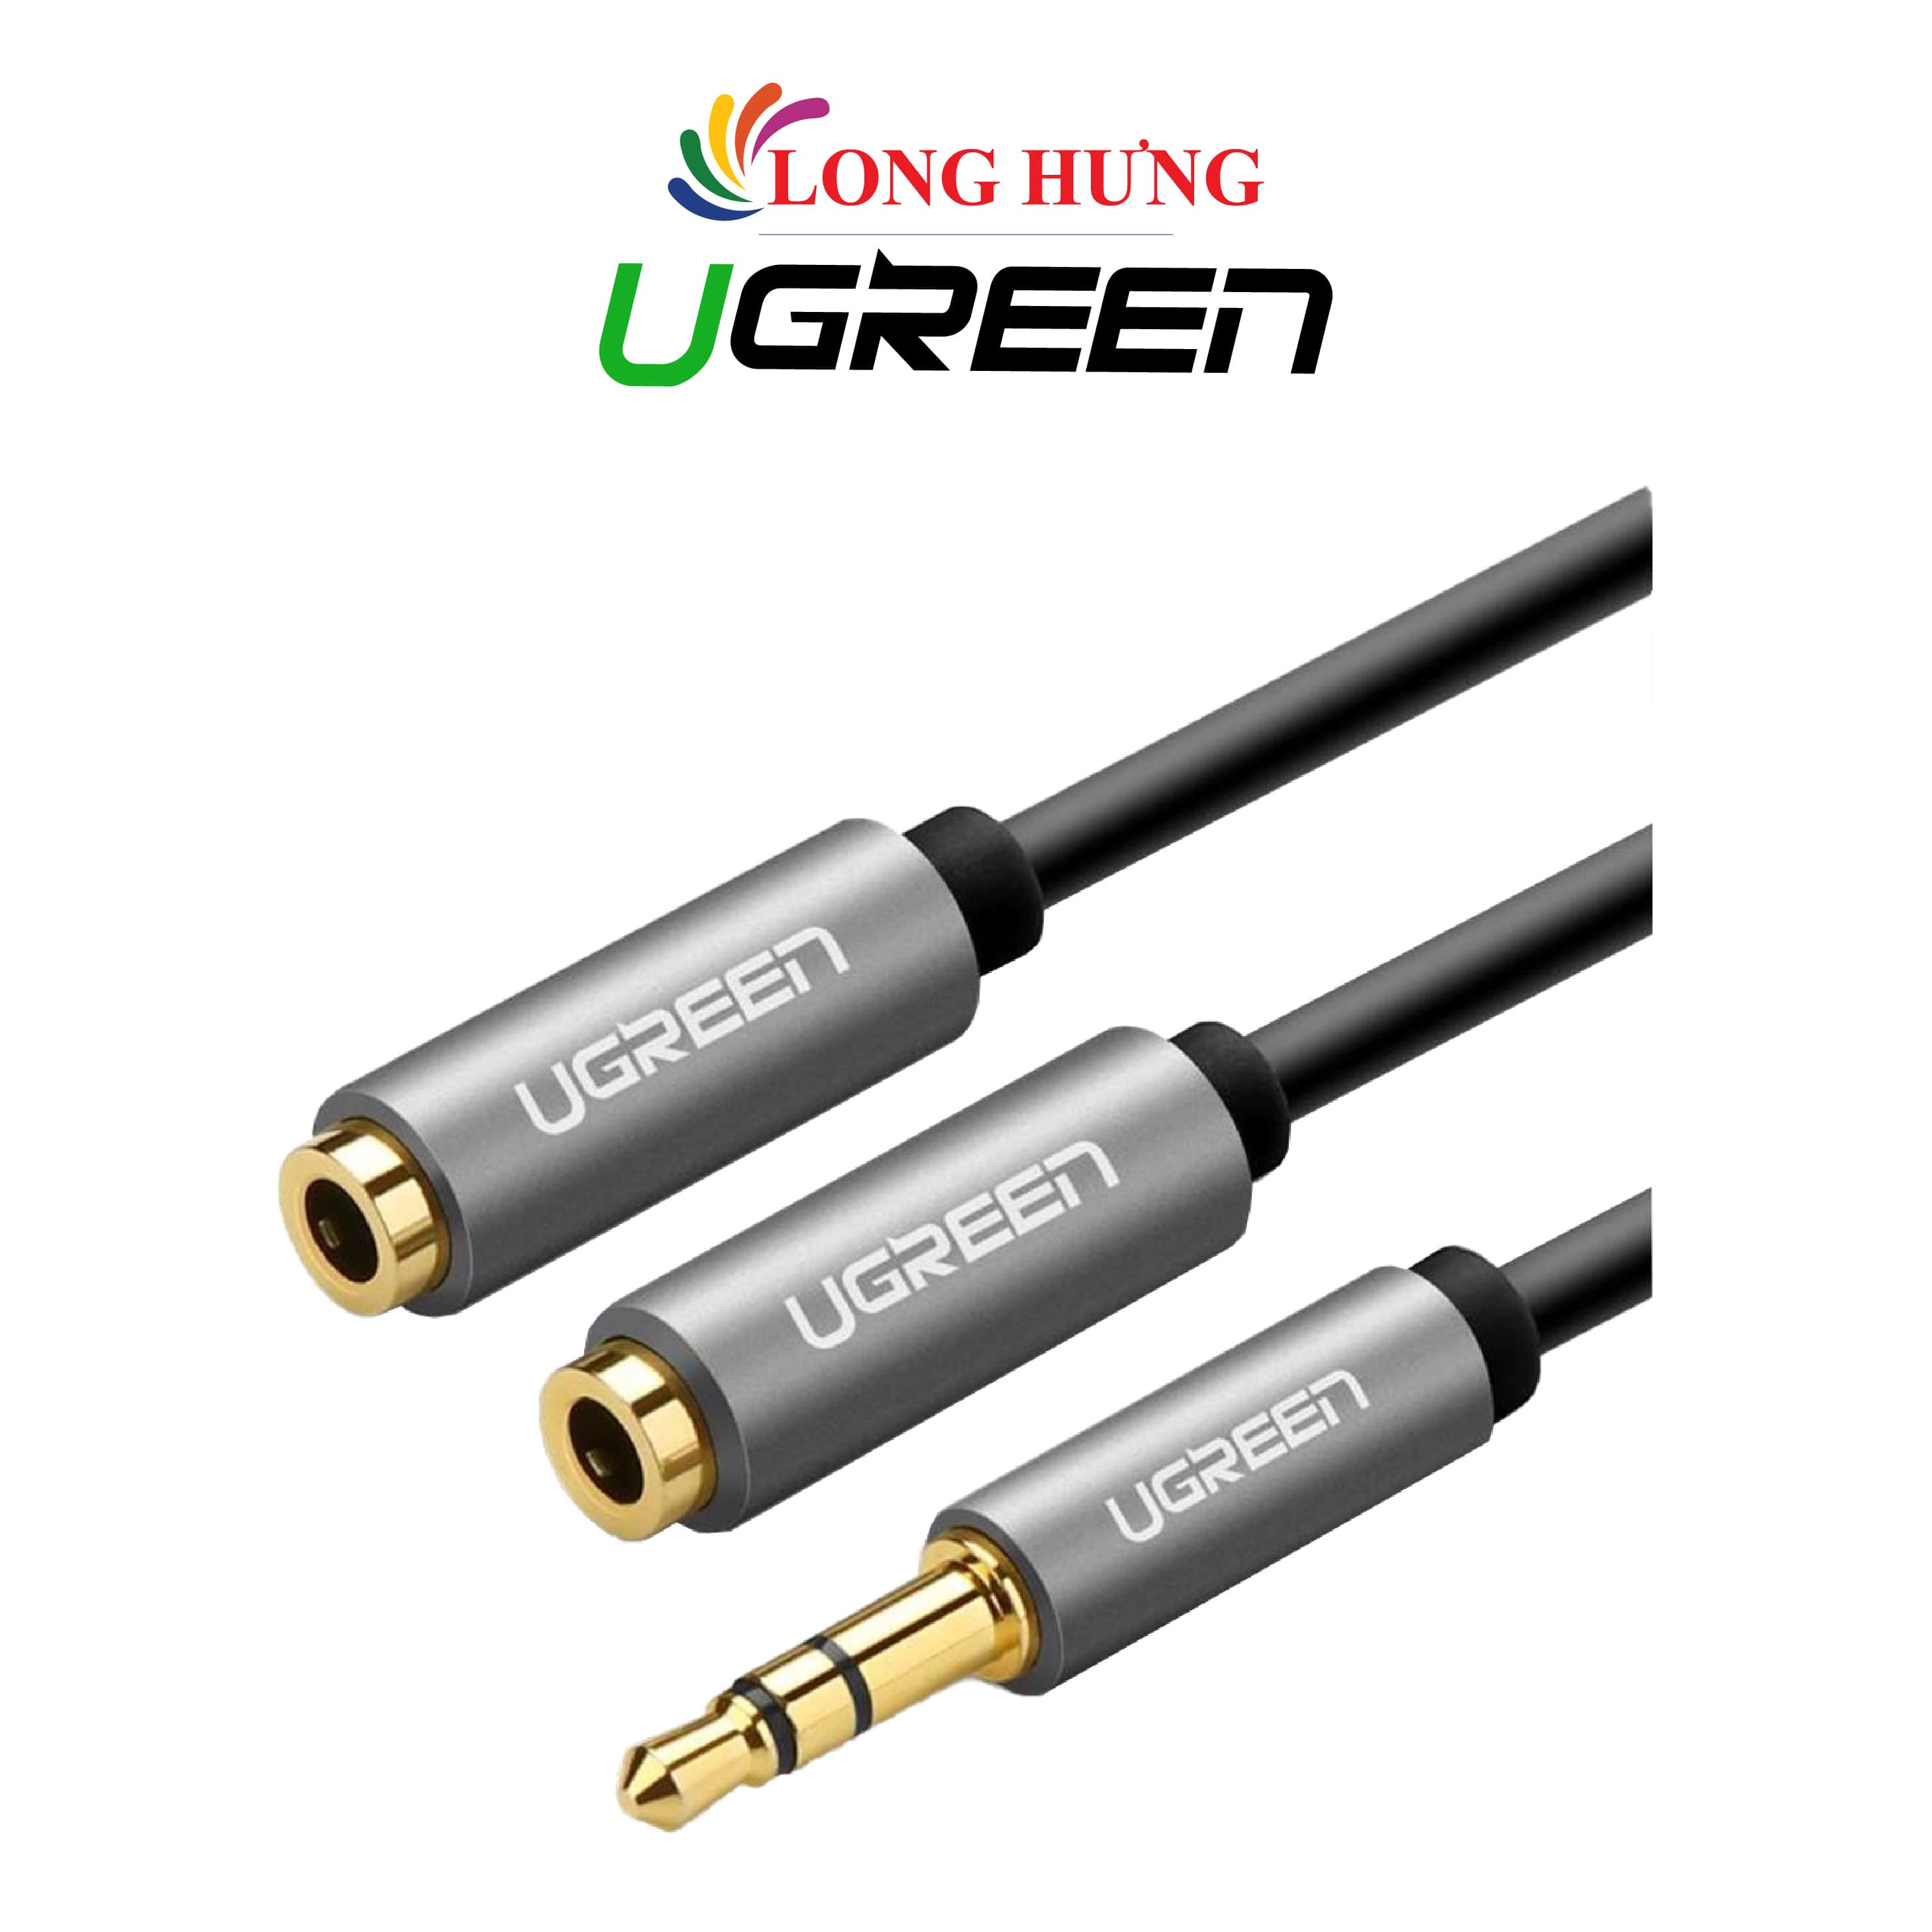 Cáp chuyển AV 3.5mm sang 2 đầu tai nghe Ugreen Audio Splitter Cable with Braid 20cm AV123 - Hàng chính hãng